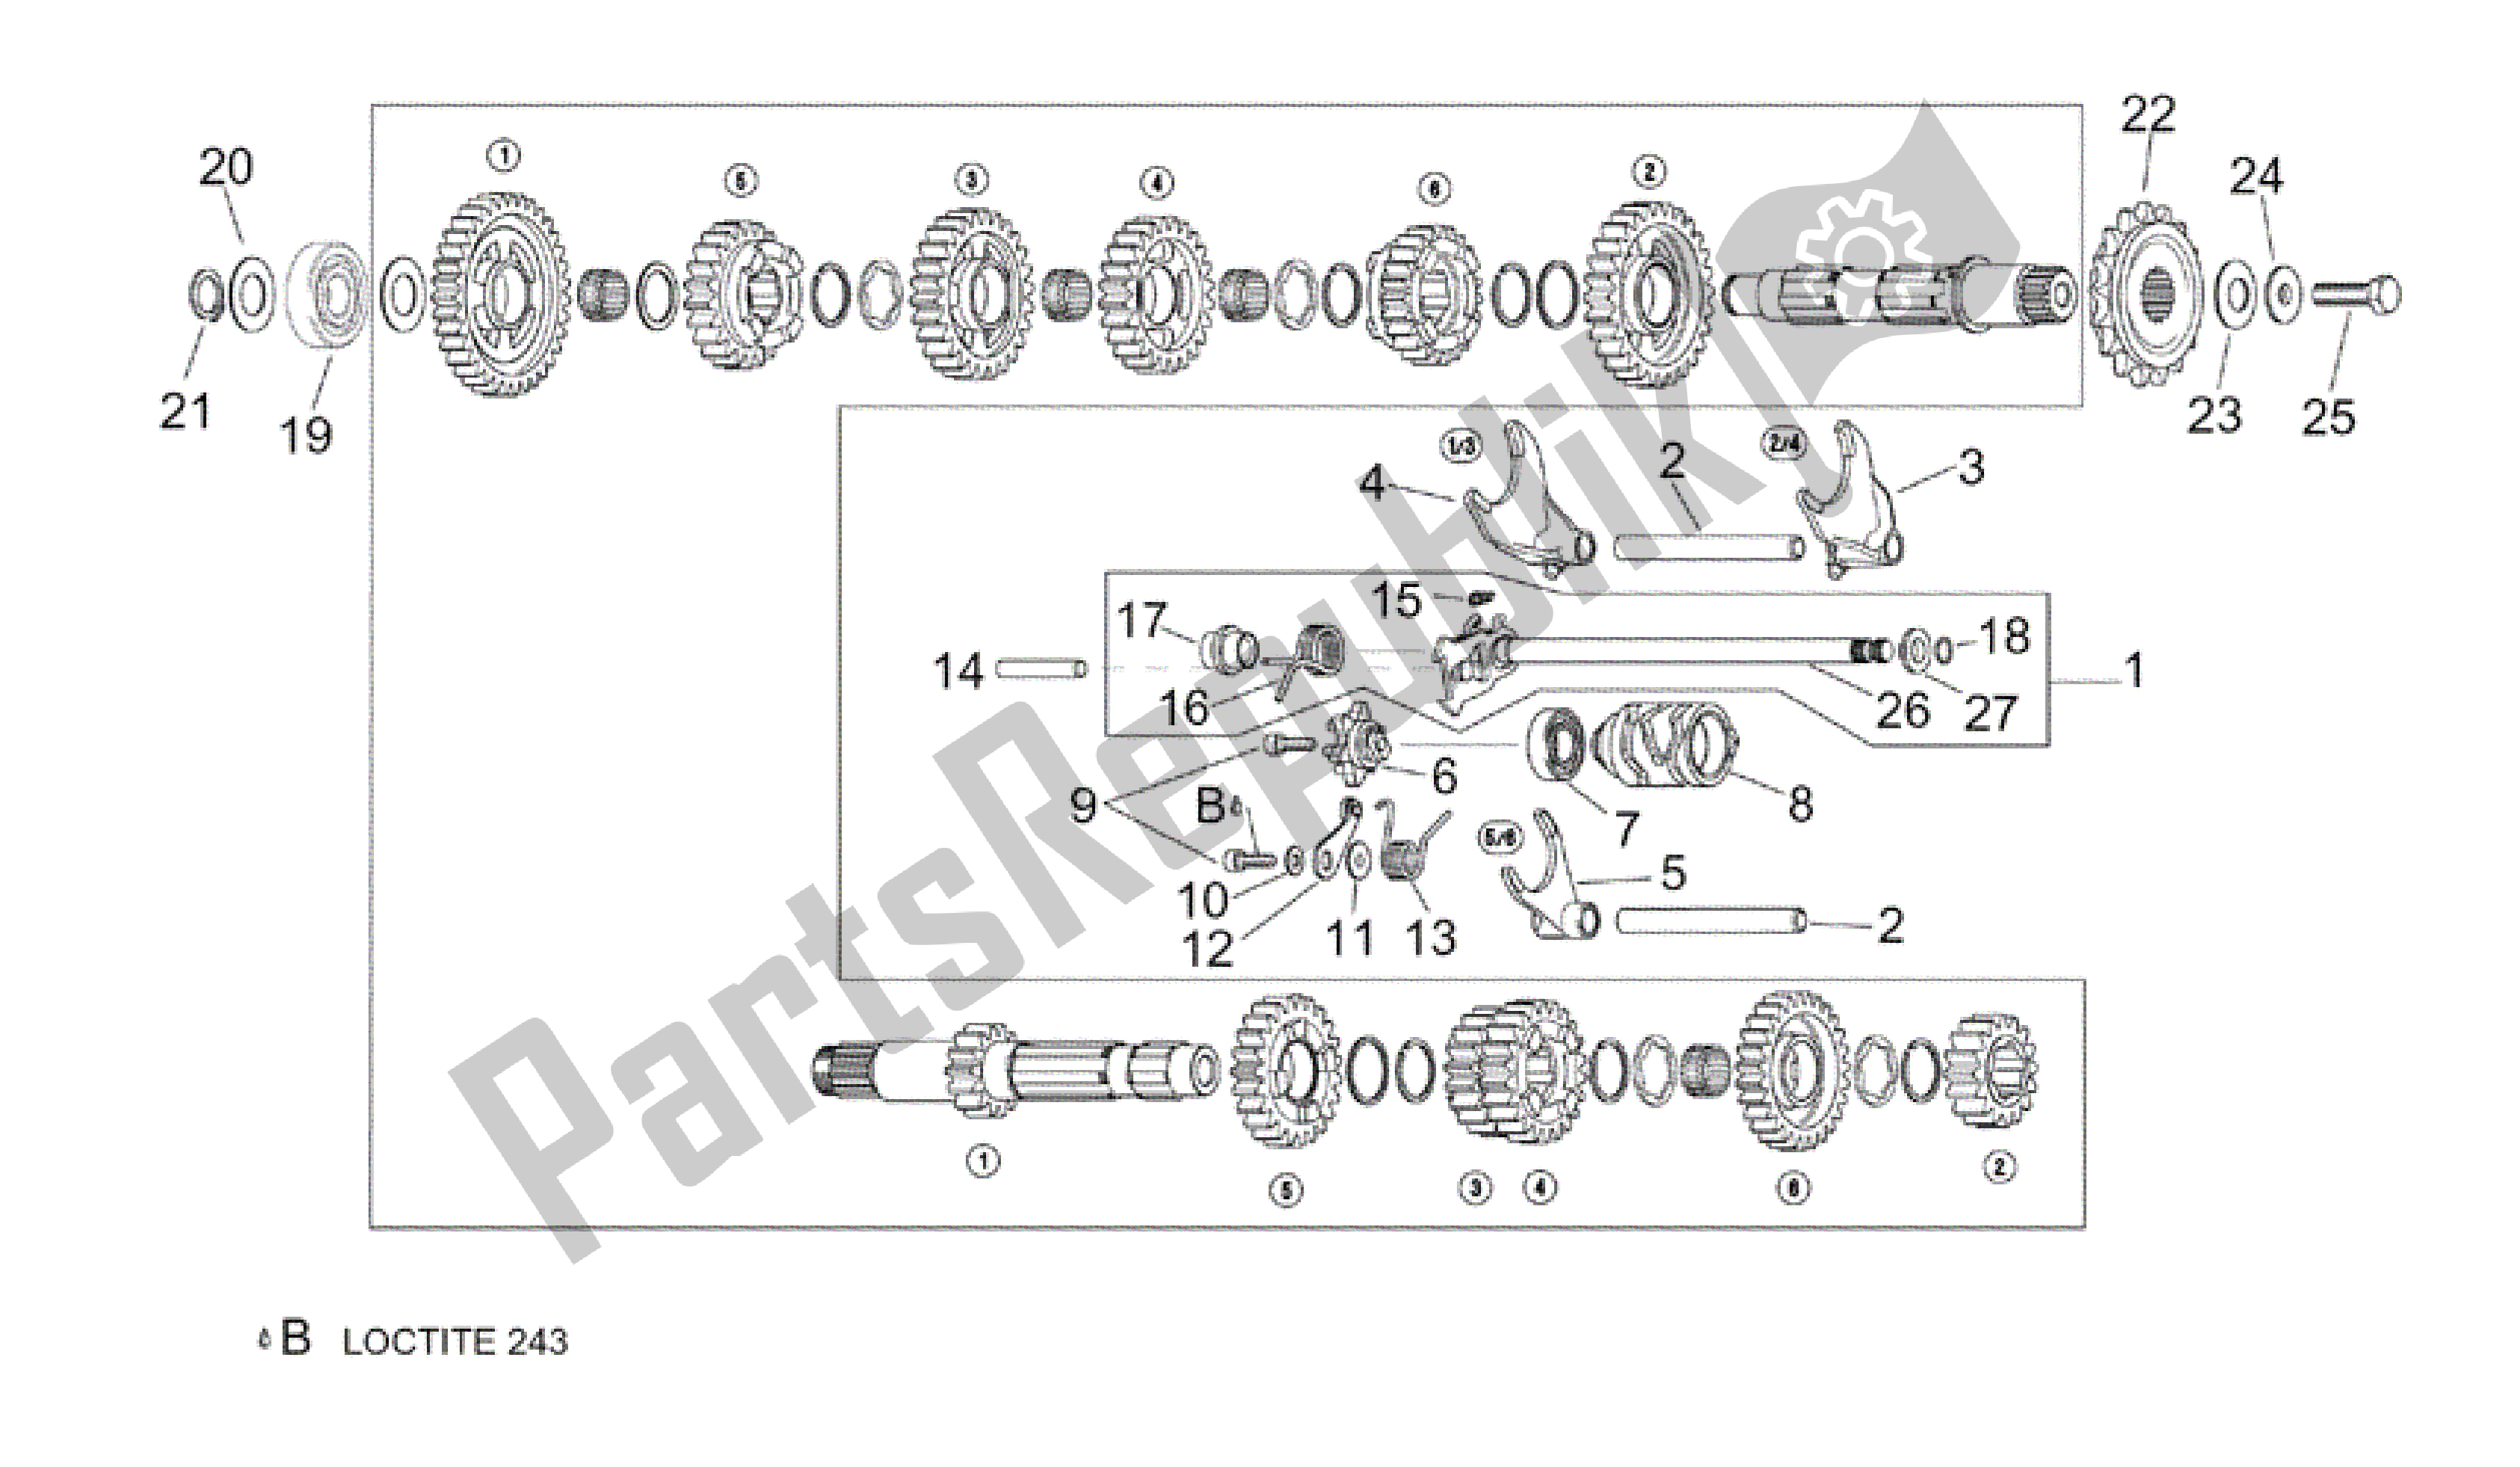 All parts for the Gear Box Selector of the Aprilia RSV Tuono 3952 1000 2002 - 2003